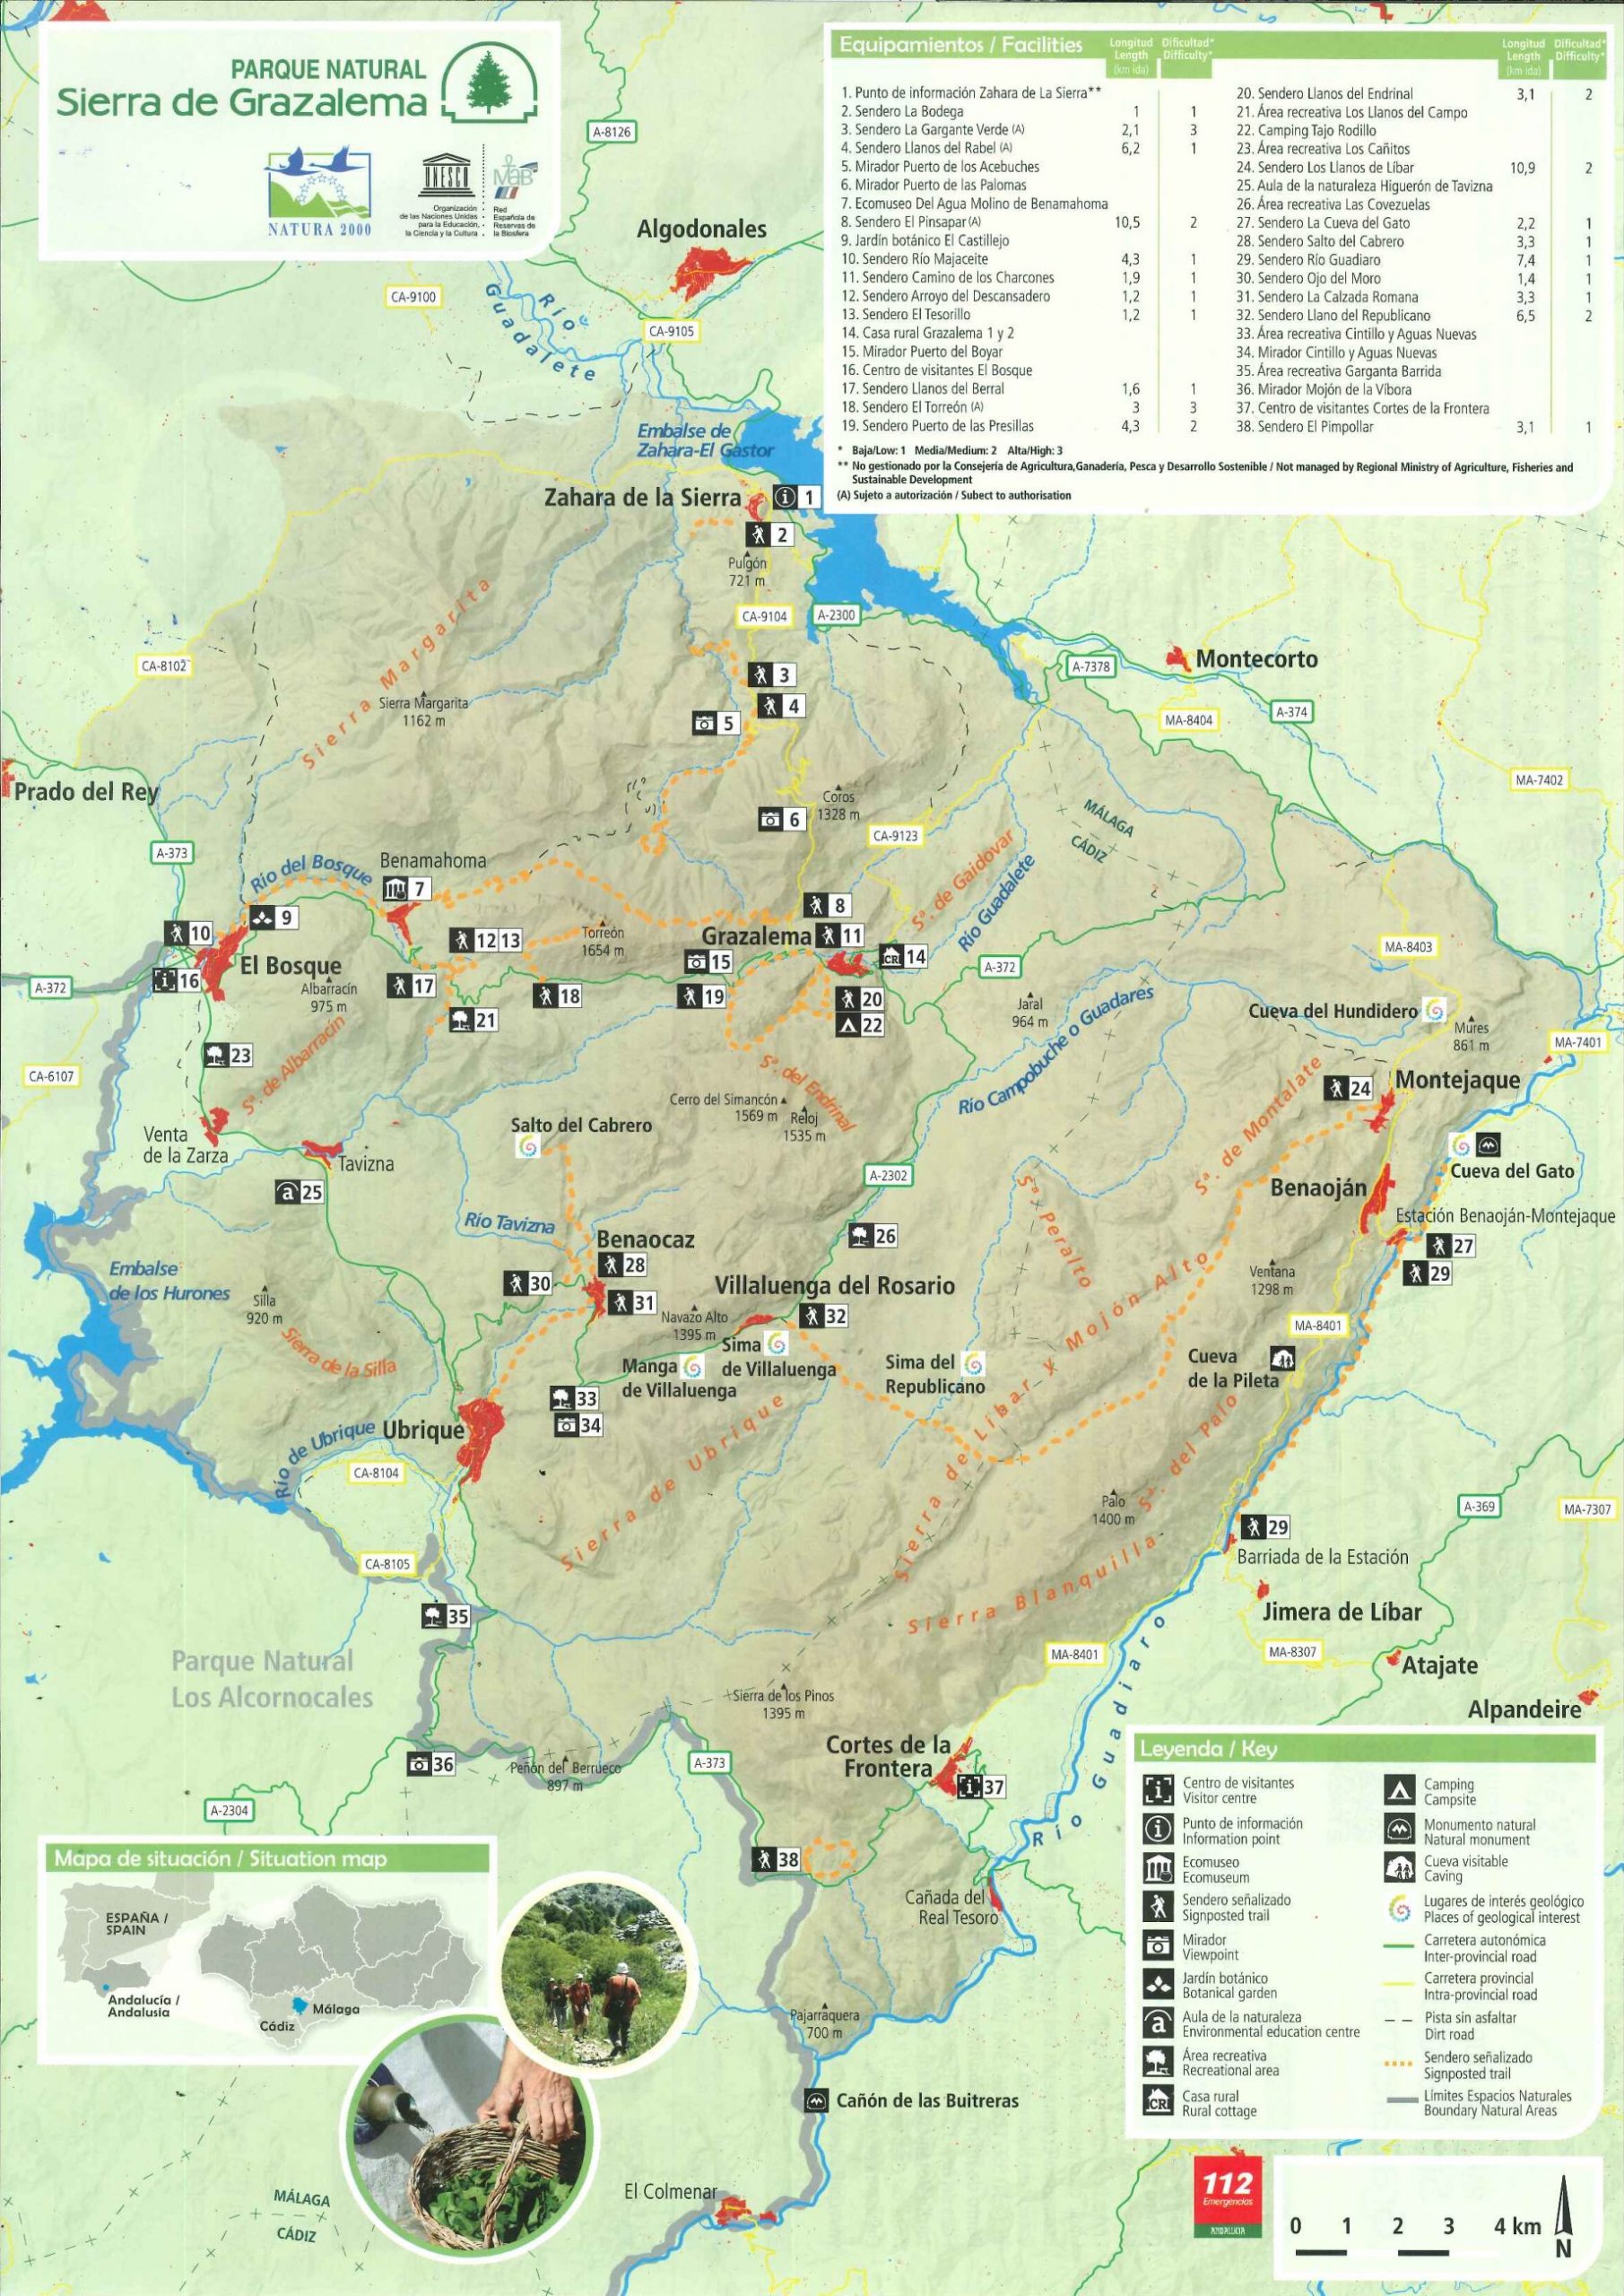 Parque Natural Sierra de Grazalema. Mapa de uso público